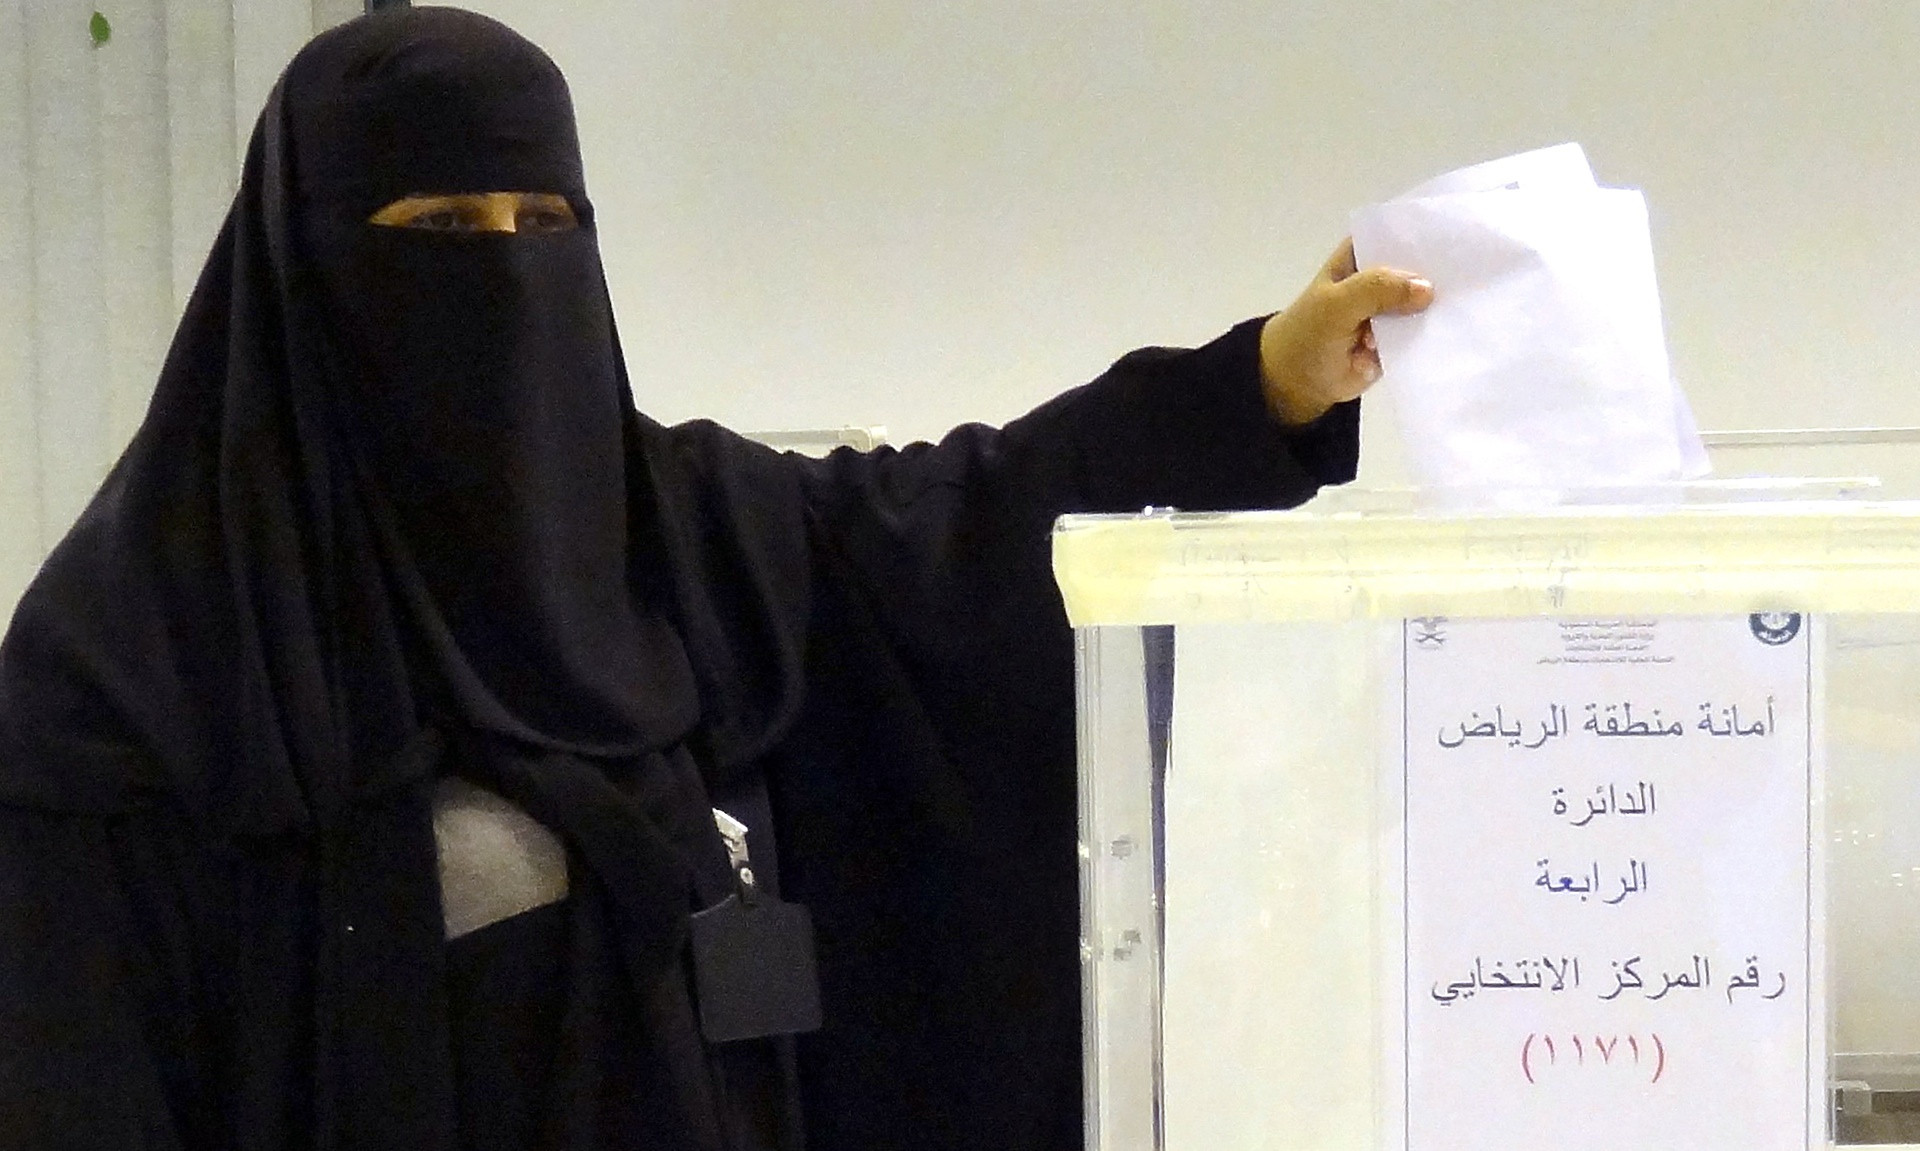 Οι γυναίκες της Σαουδικής Αραβίας ψηφίζουν για πρώτη φορά